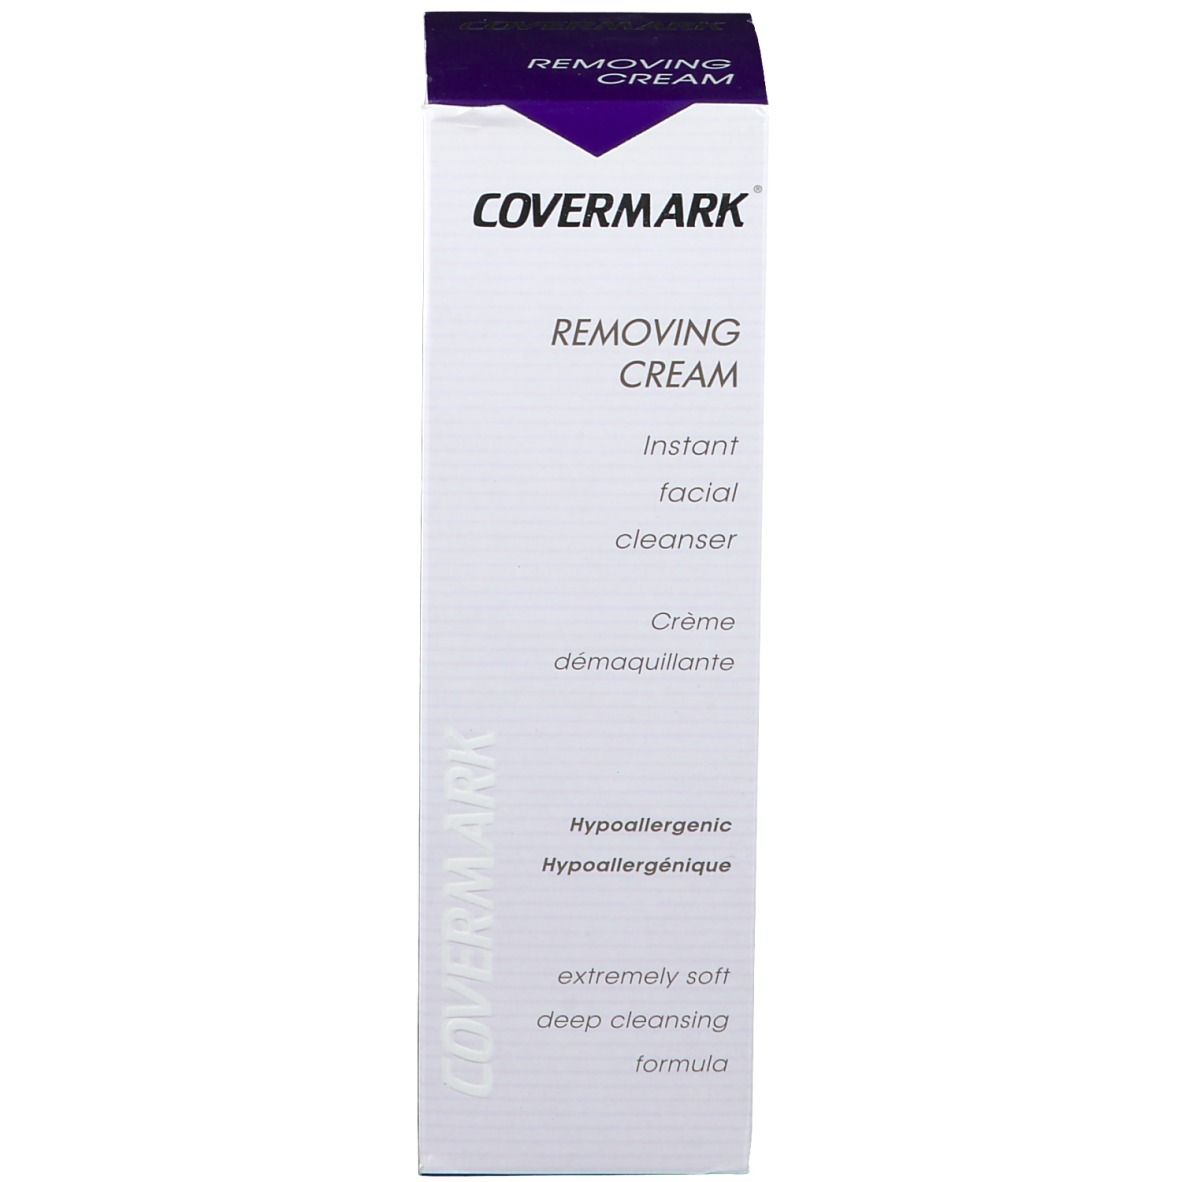 COVERMARK® Removing Cream